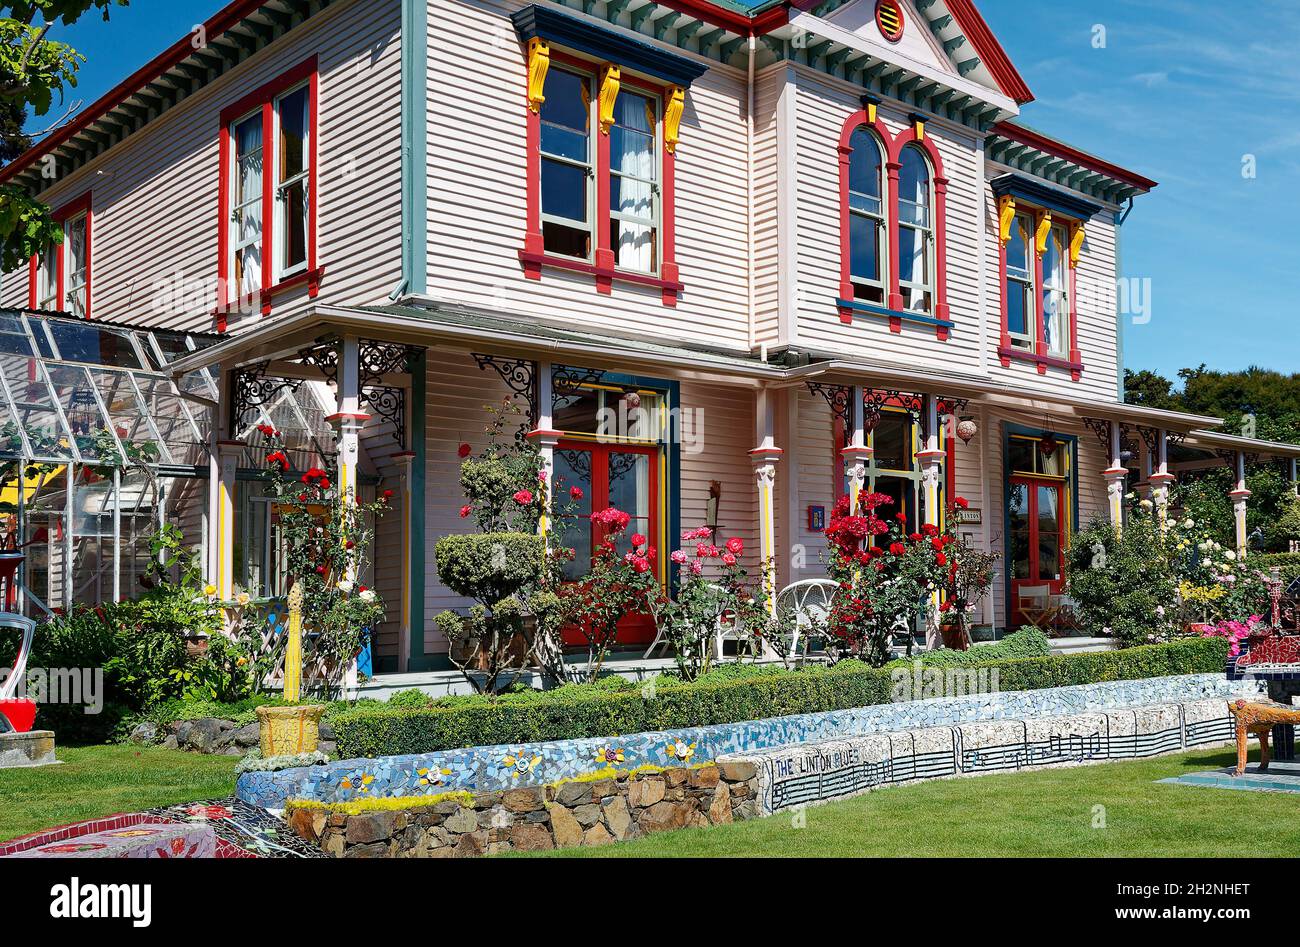 maison colorée, jardin; fleurs, banc de mosaïque, notes musicales,Imaginatif; ancien bâtiment, serre, la maison des géants; Akaroa;Nouvelle-Zélande Banque D'Images